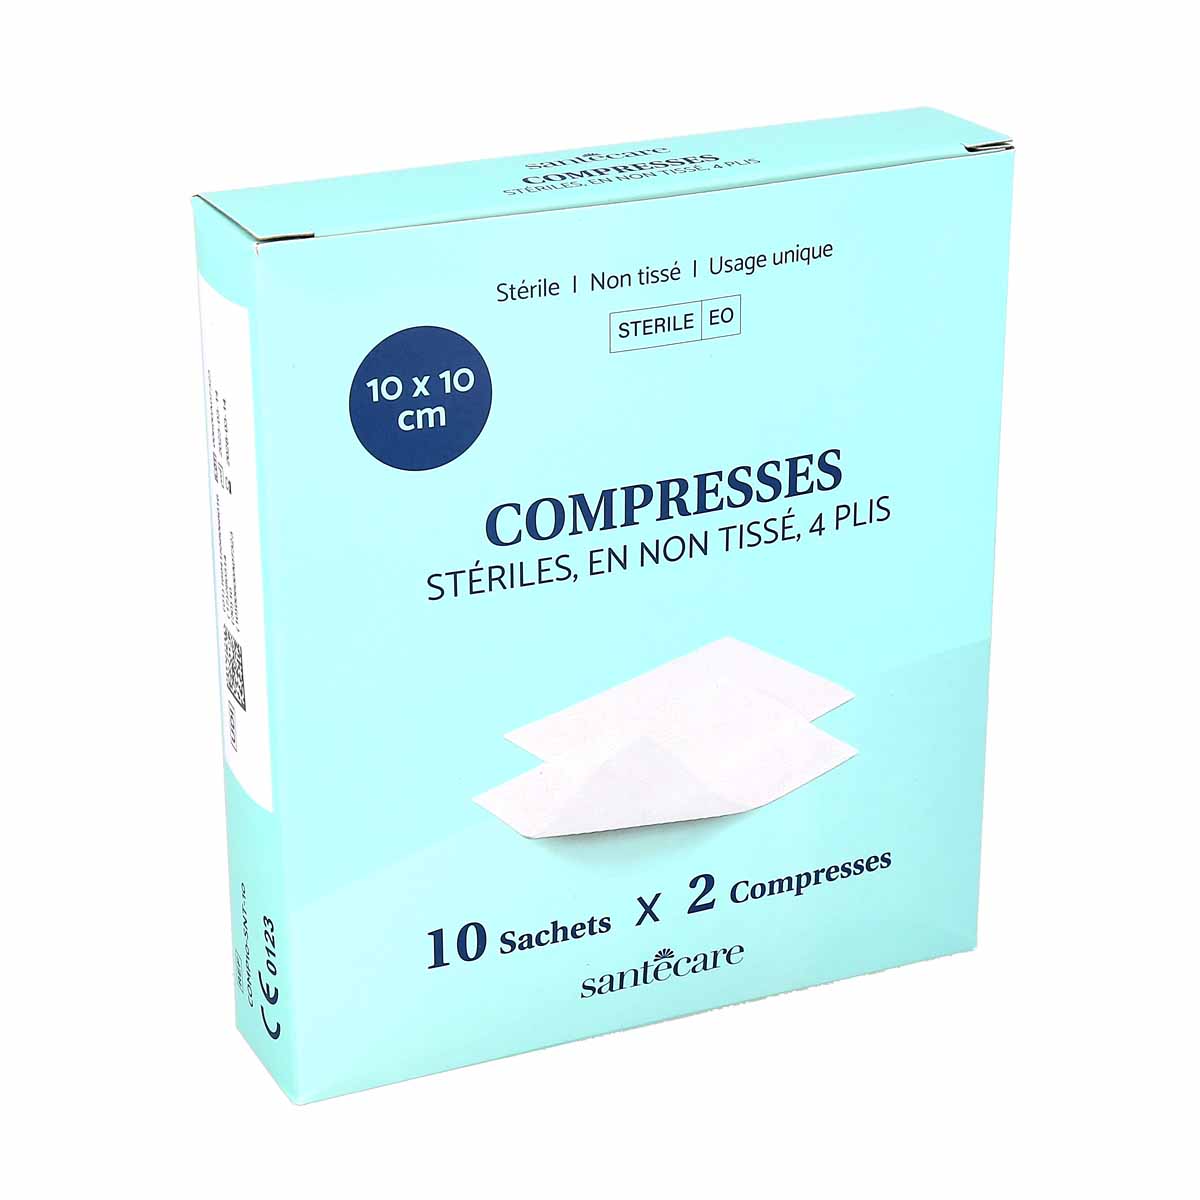 Santecare Compresses stériles, en non tissé, 4 plis - 10 sachets x 2  compresses - 10x10cm